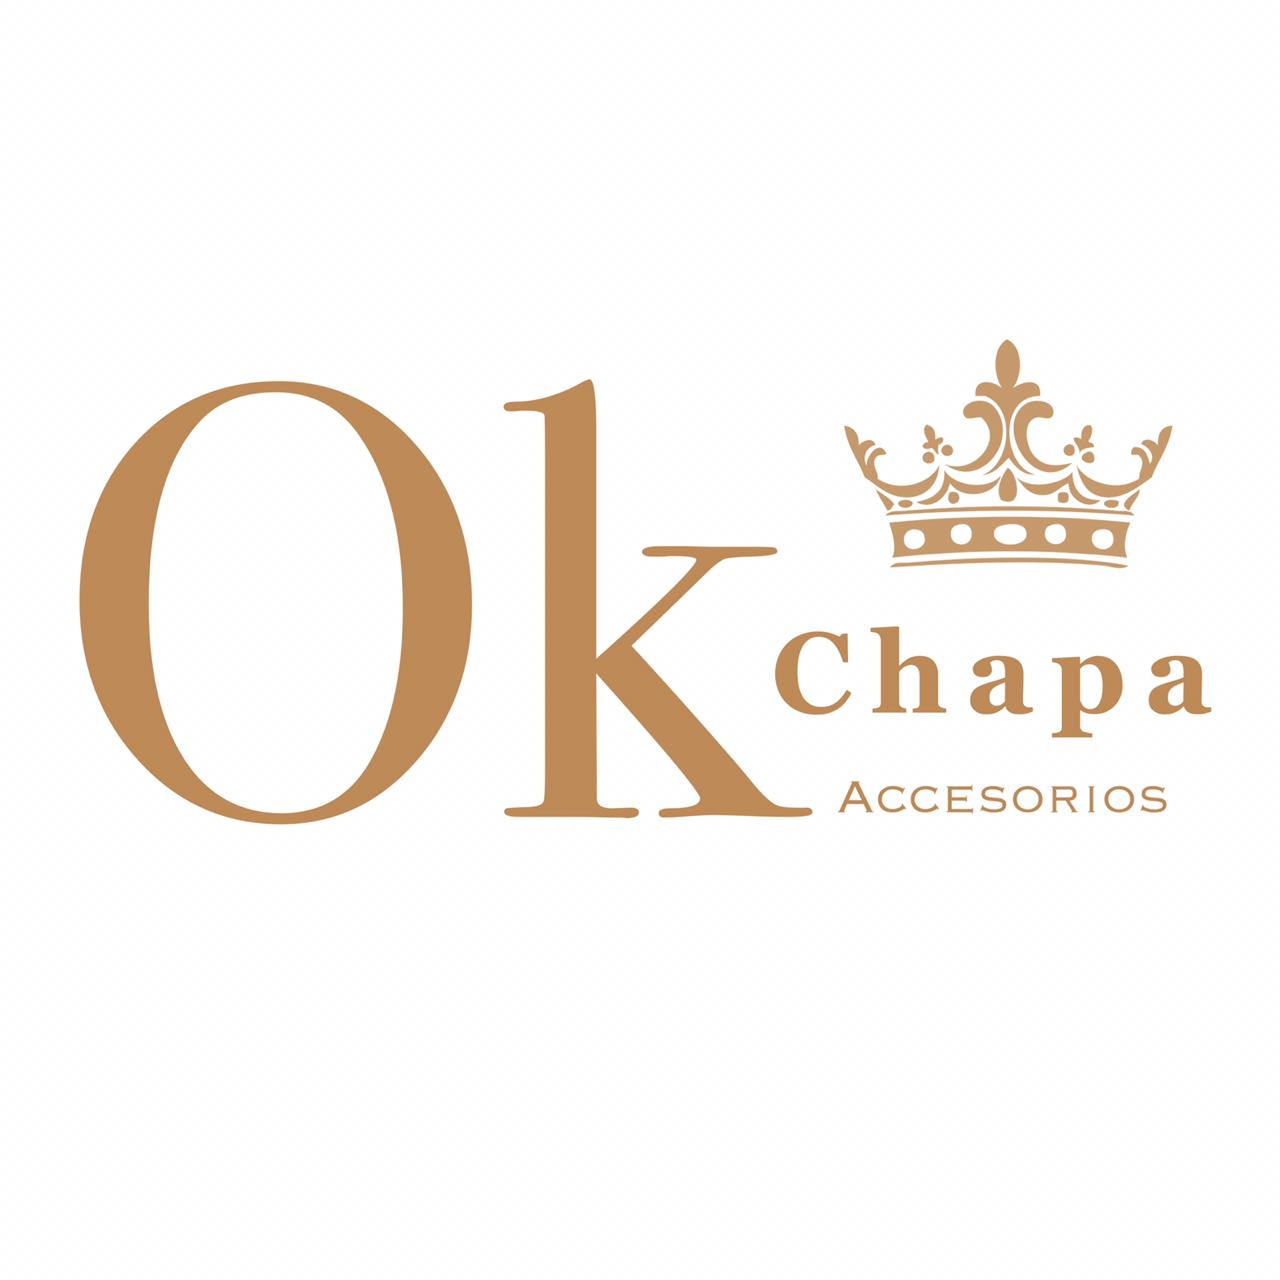 Ok Chapa Accesorios